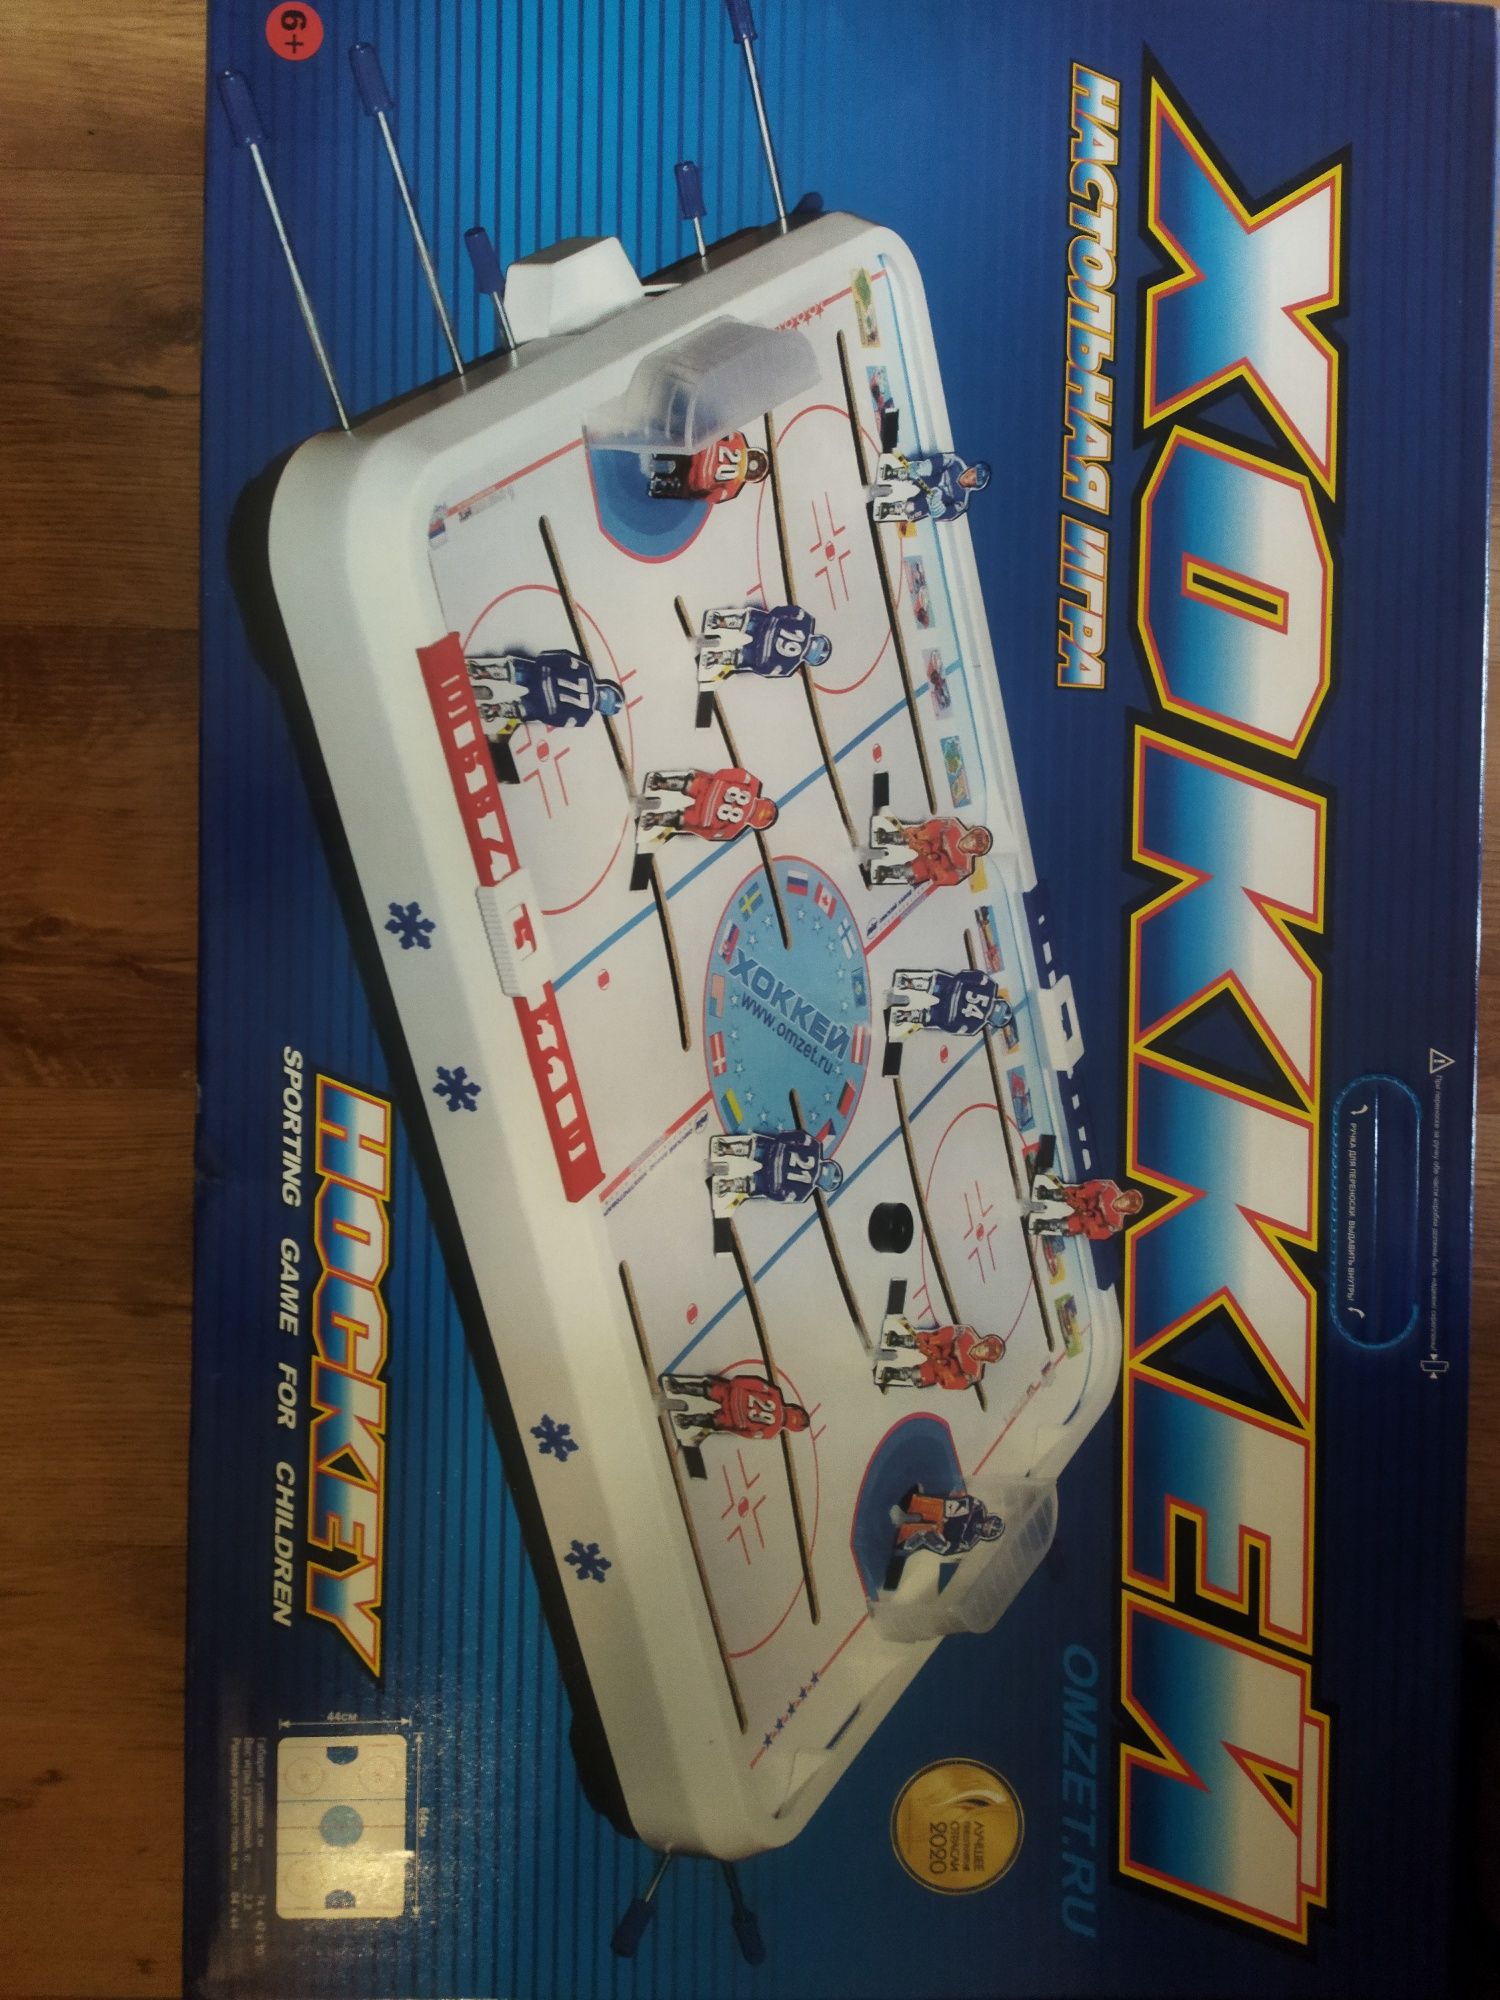 продам хоккей новый  в коробке  12 тыс